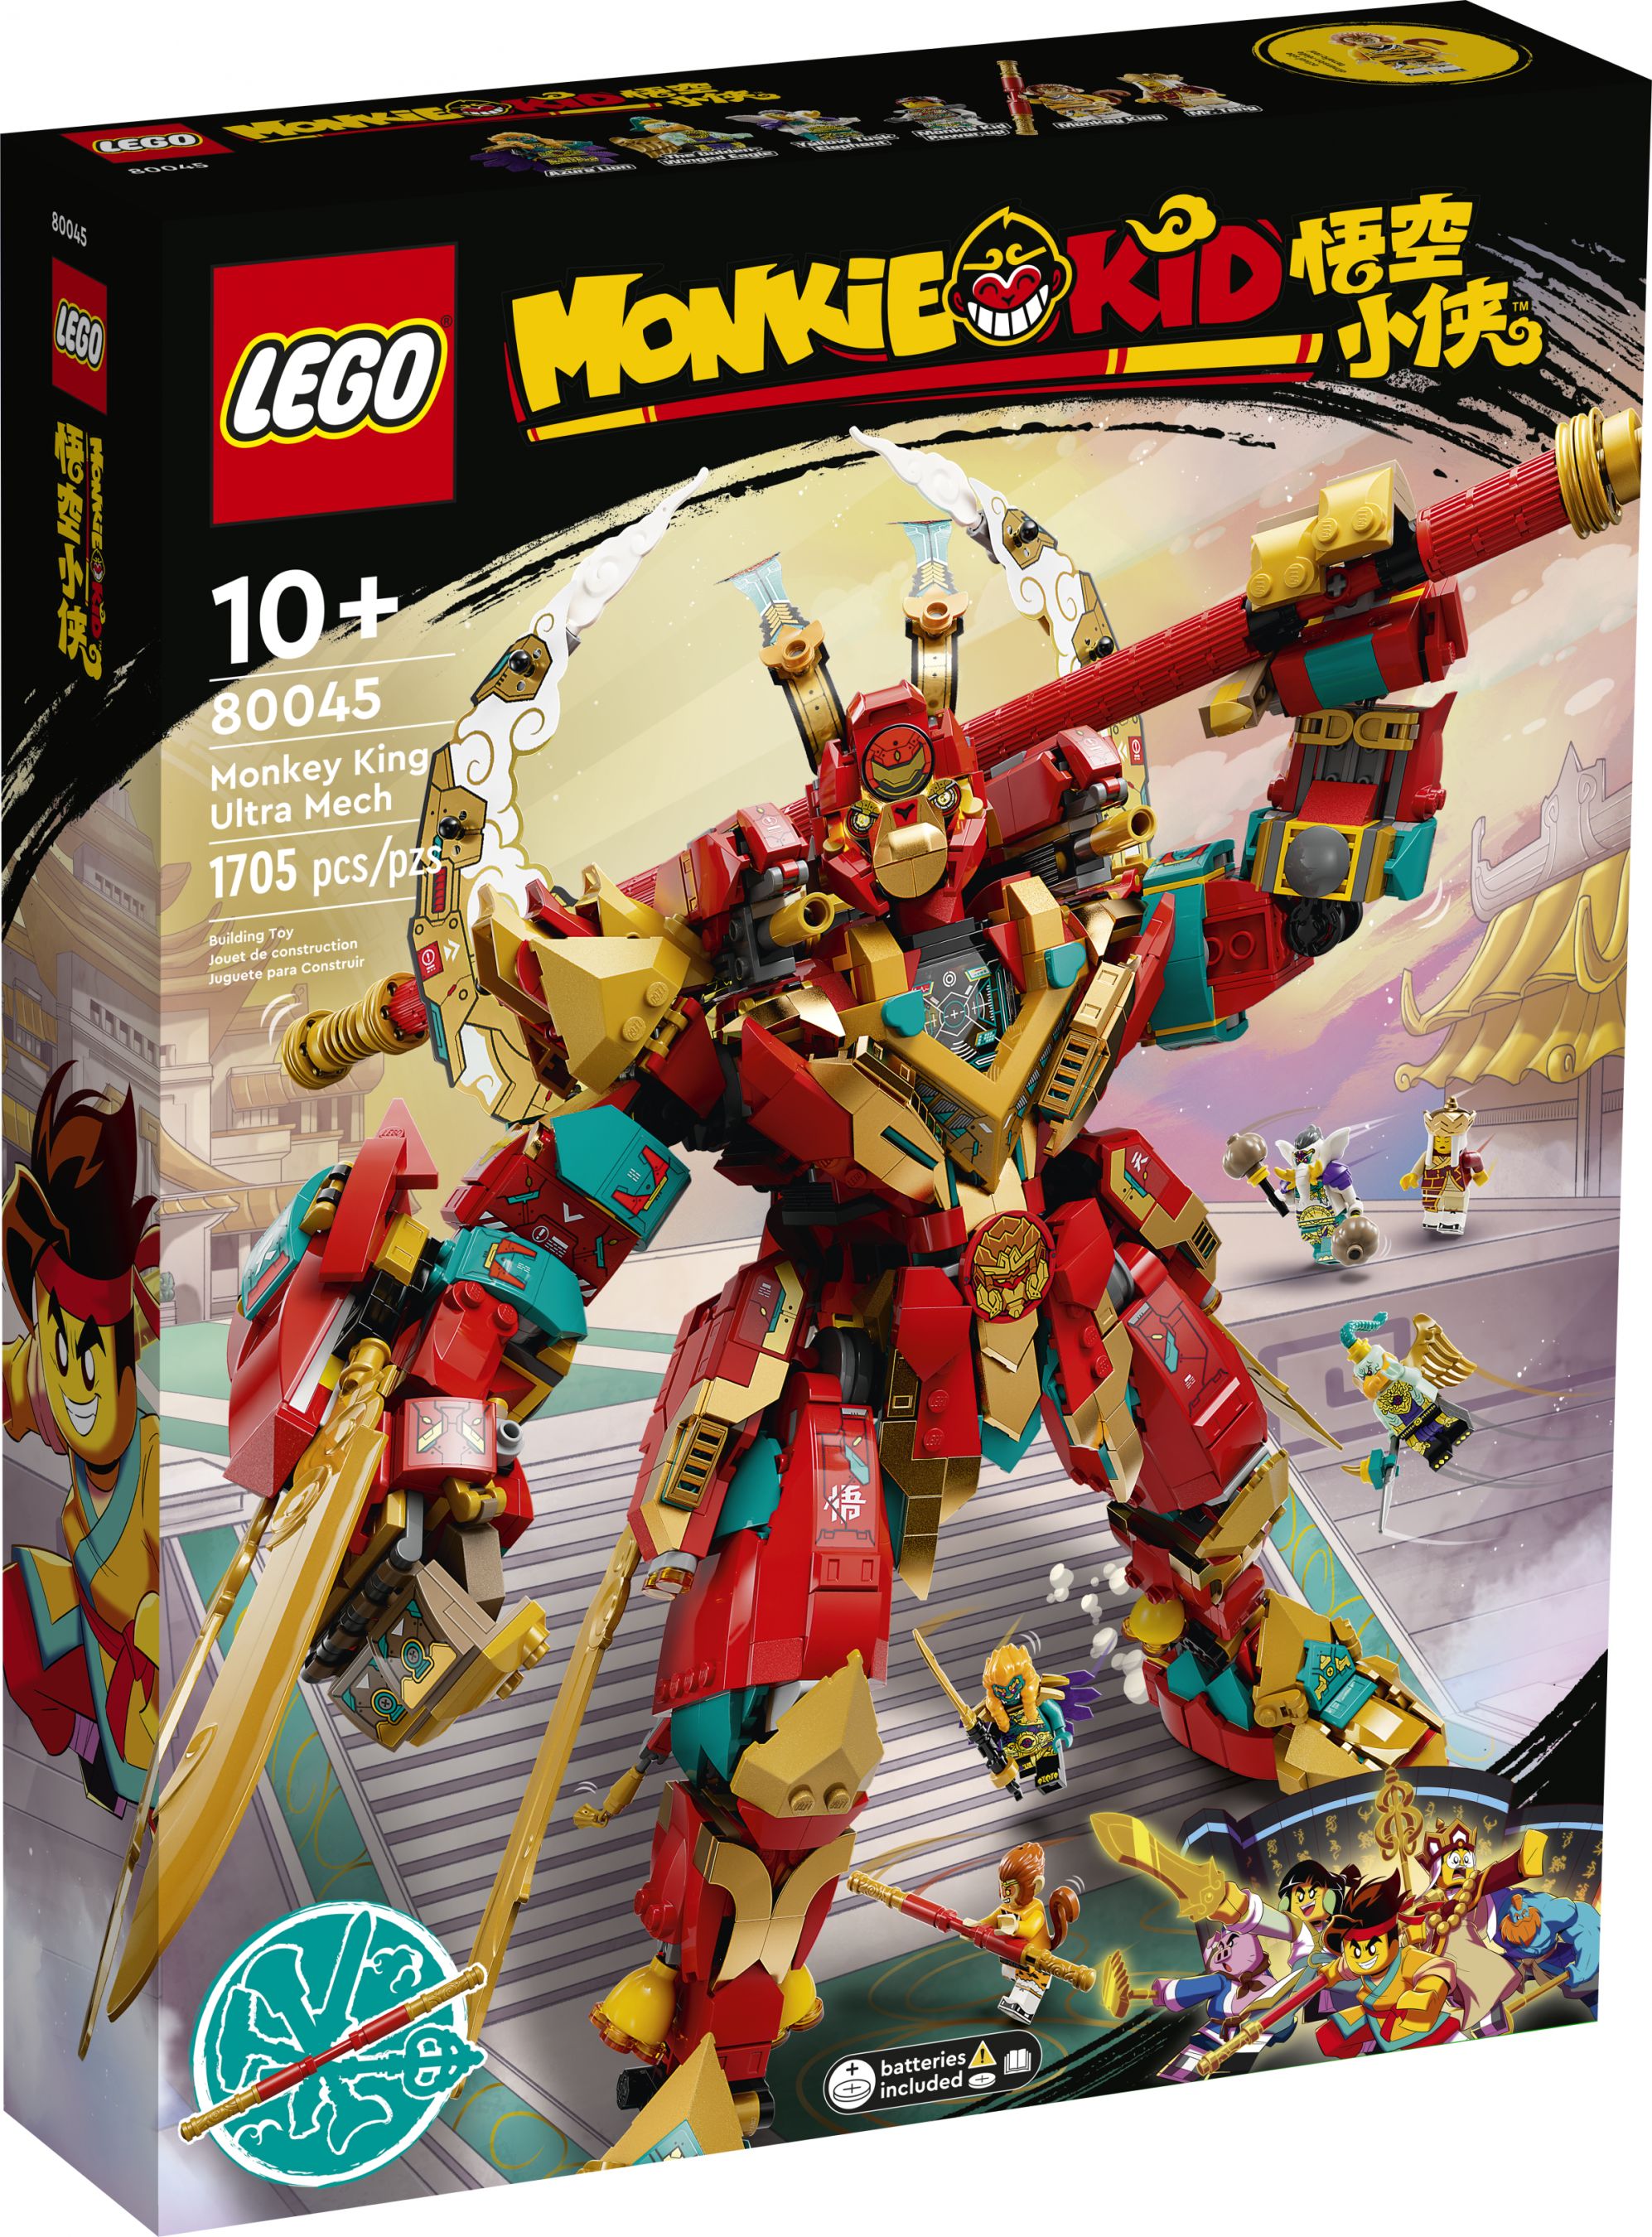 LEGO Monkie Kid 80045 Monkey Kings Ultra Mech LEGO_80045_alt1.jpg